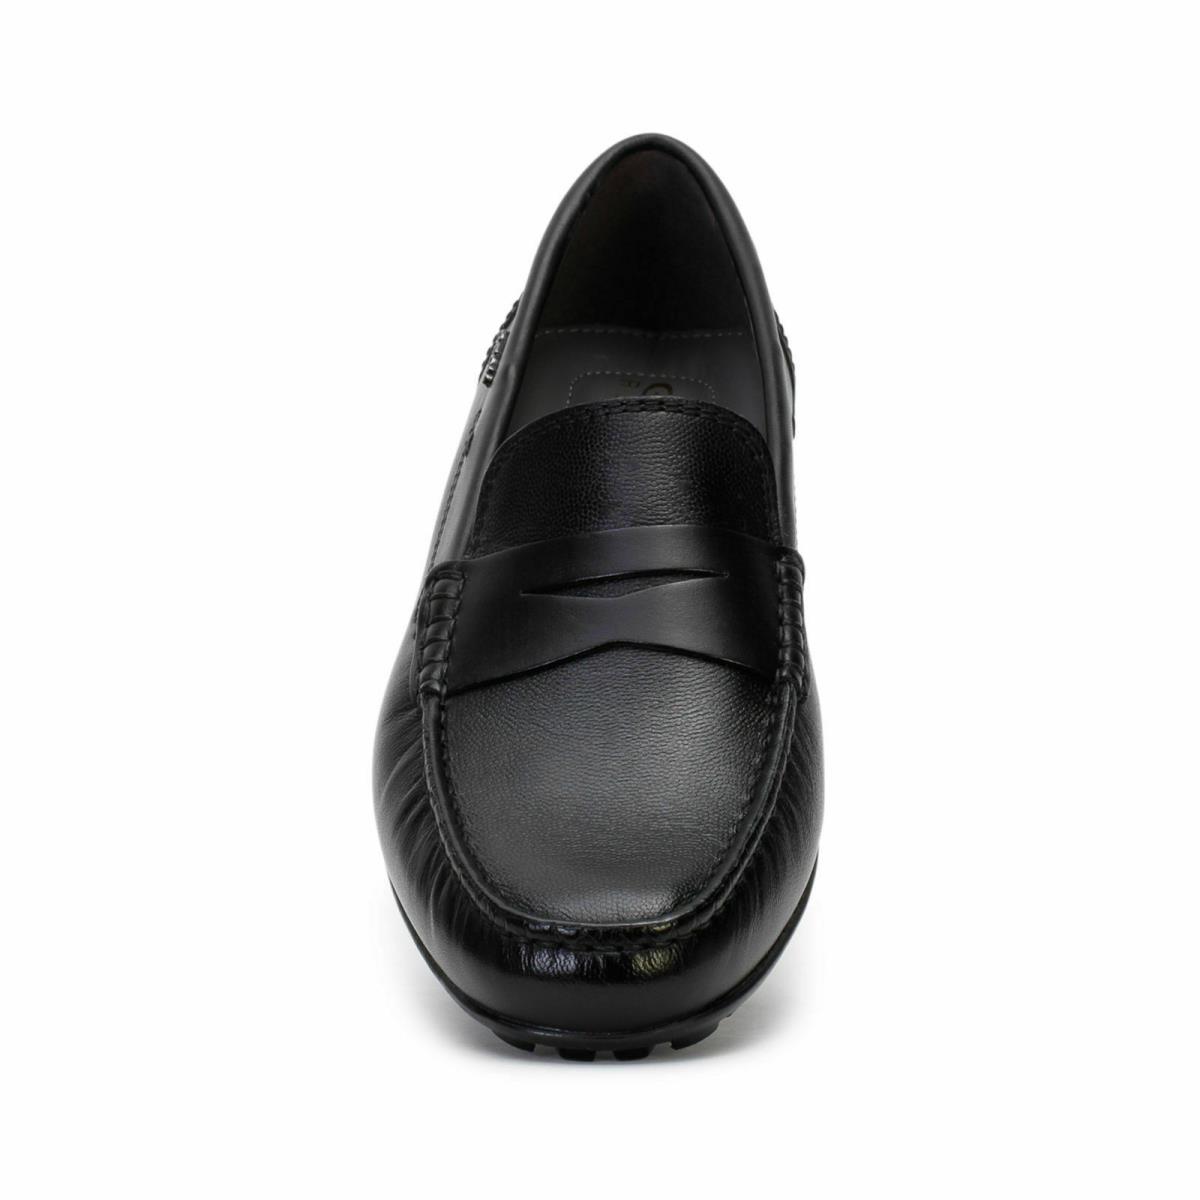 Geox Men`s u Moner Moccasin Slip on Penny Loafer Shoes 2Fit A Black Leather